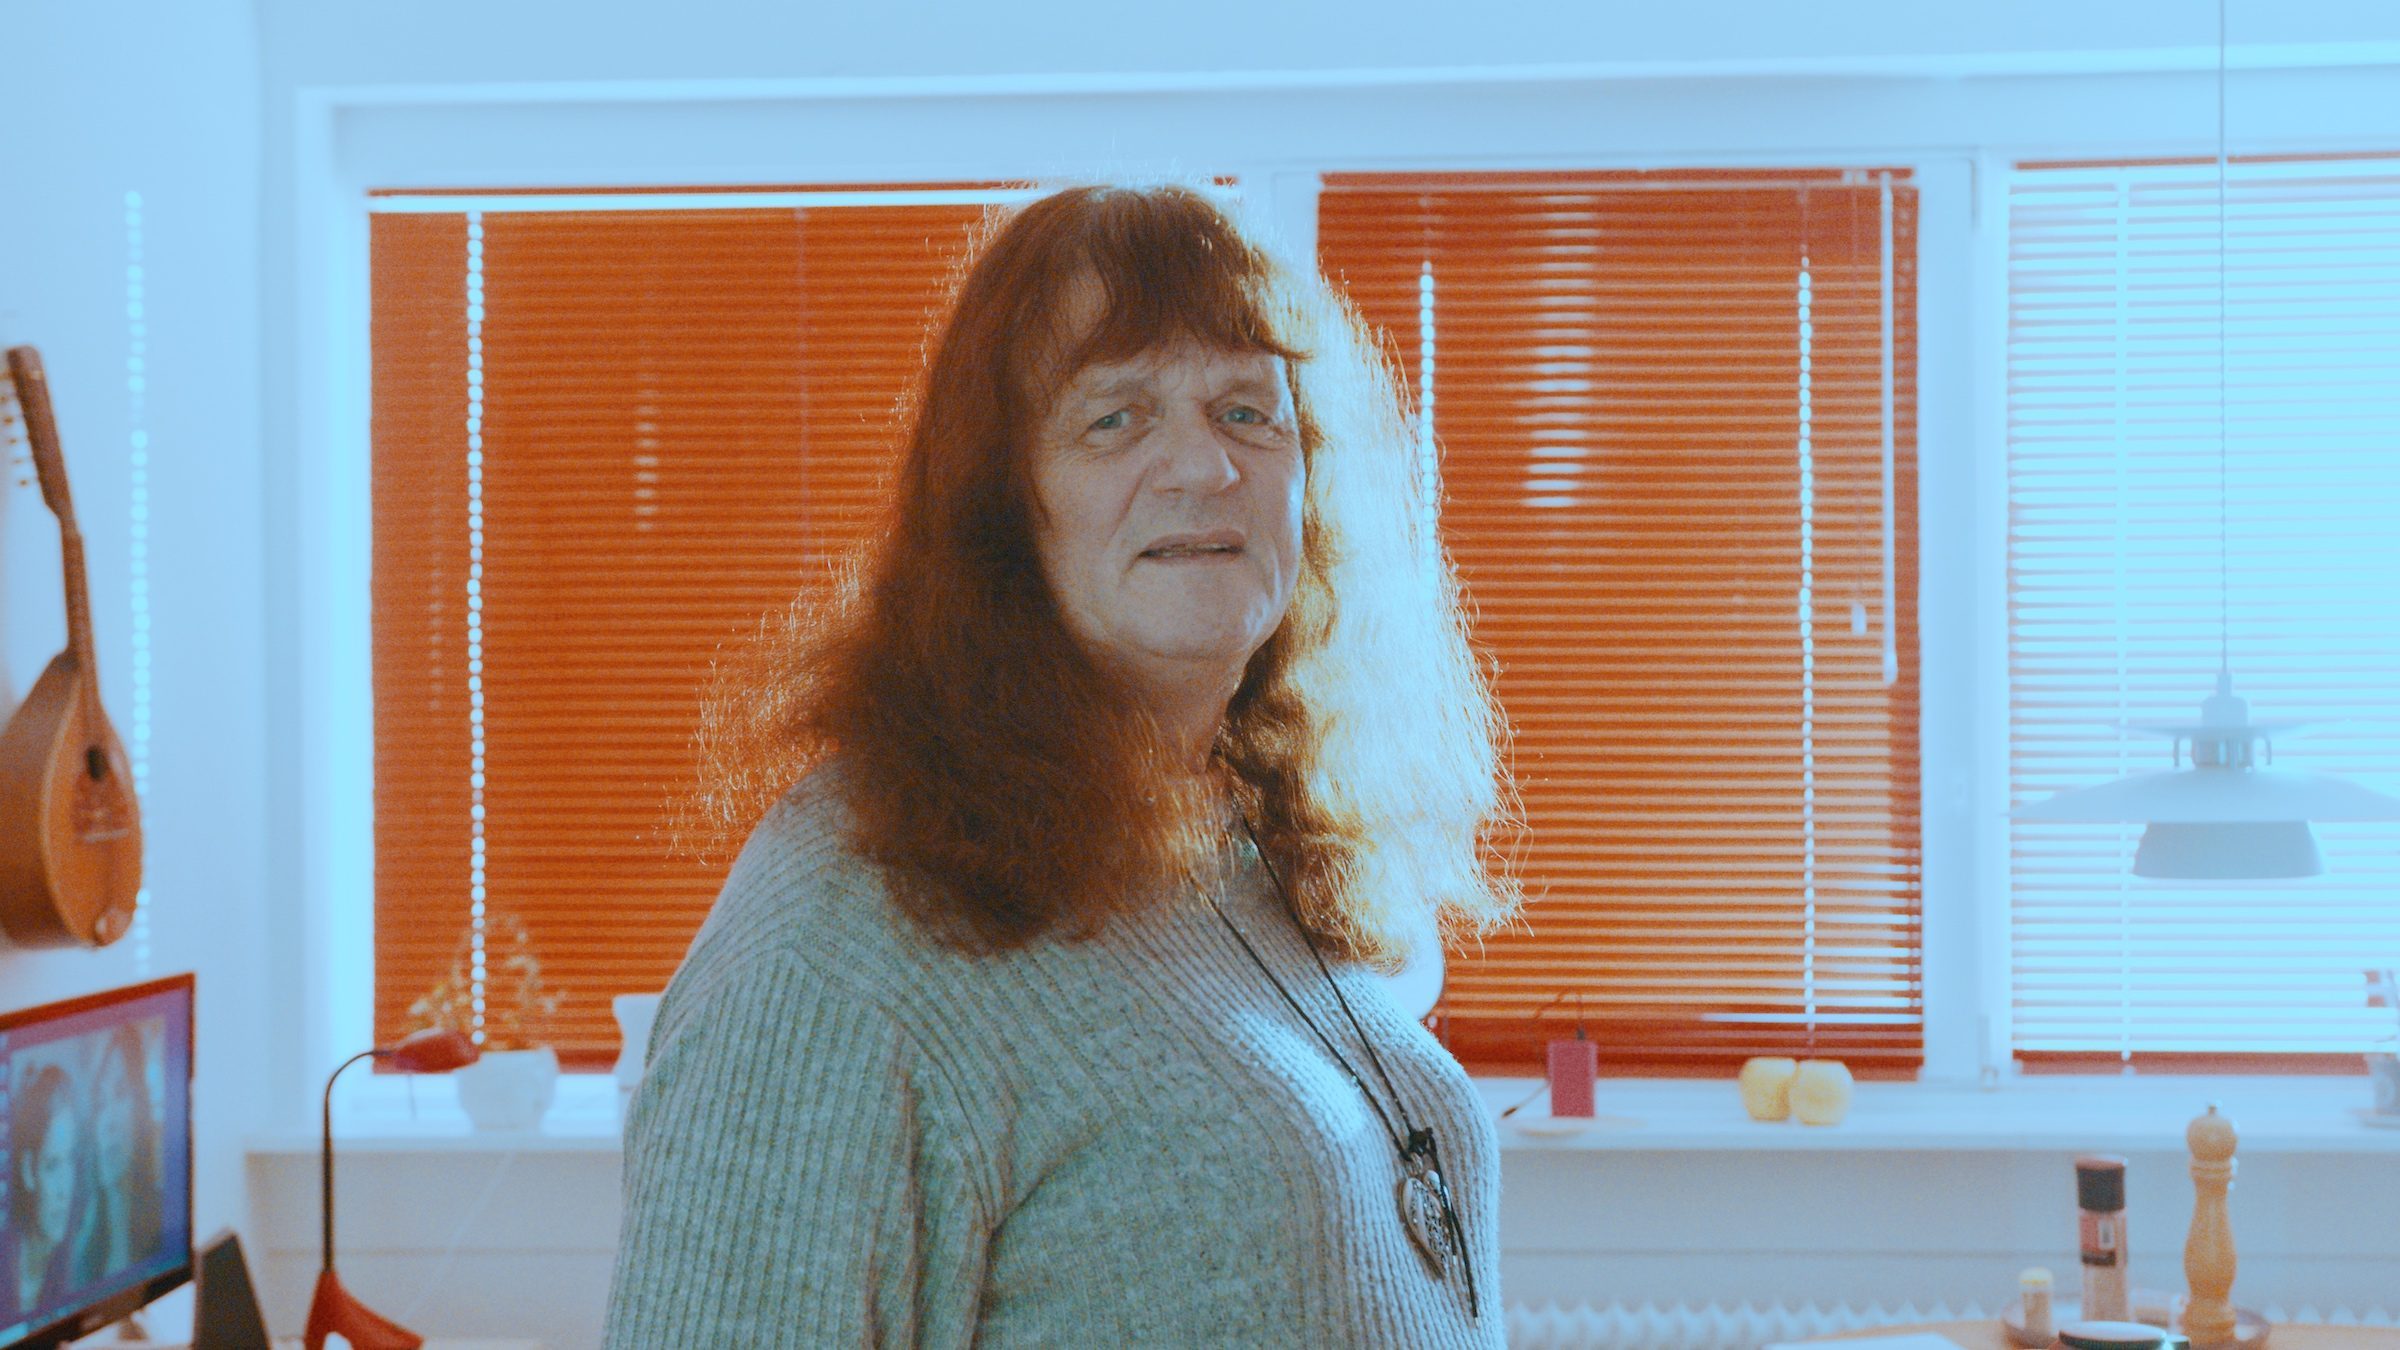 Jane lever som transkvinde i et alment boligområde: ”Alle har ret til at være anderledes”